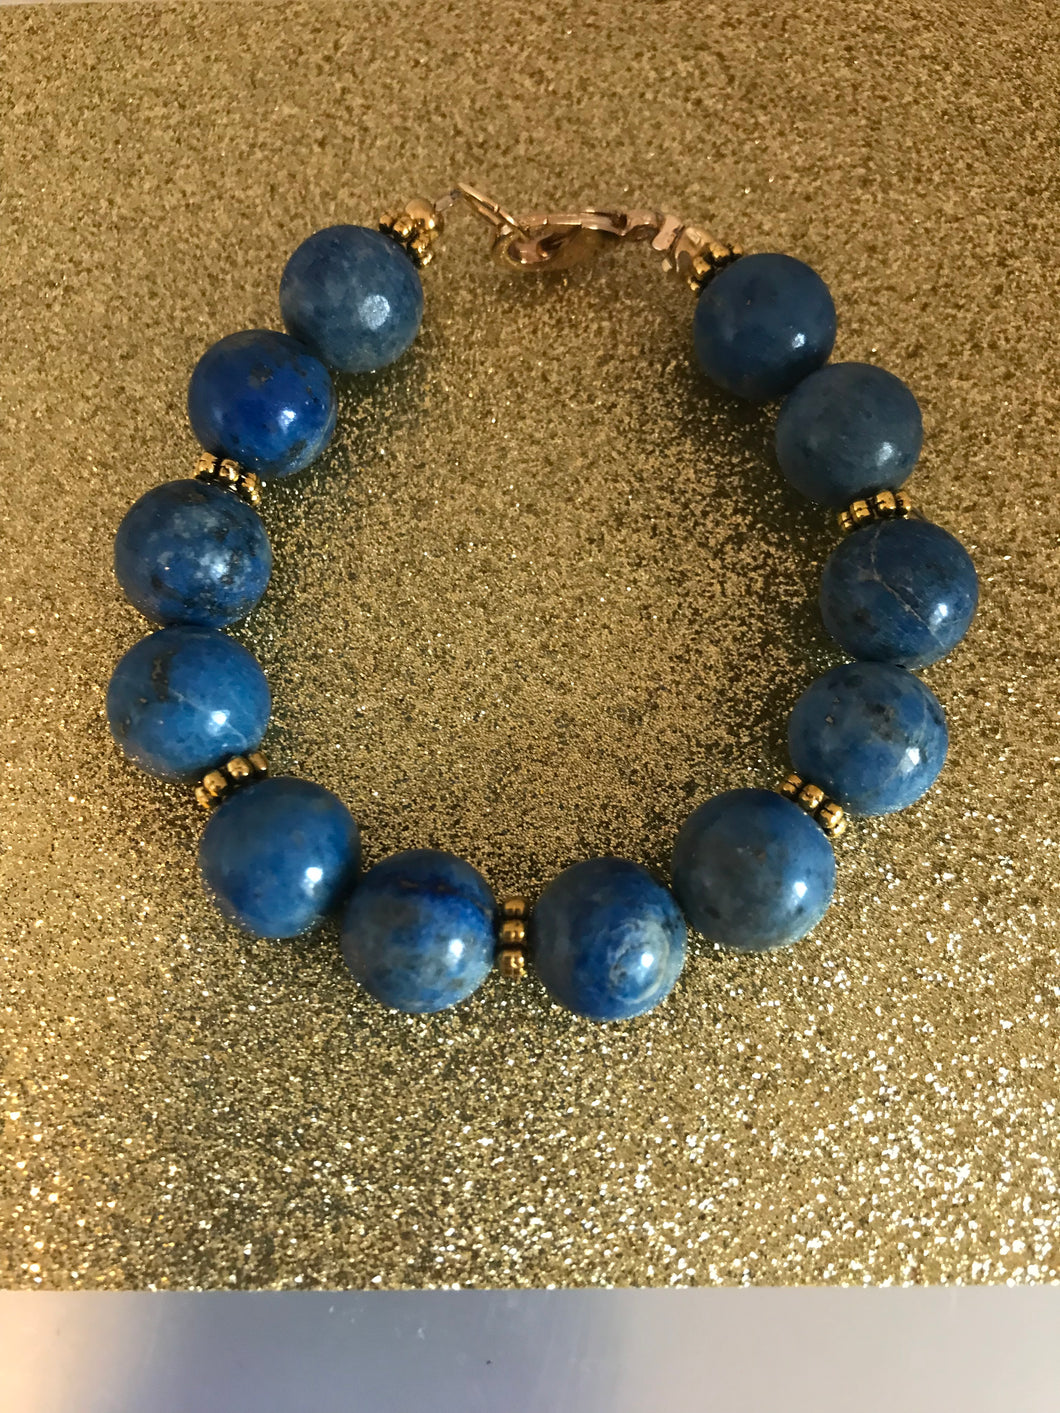 Wedgewood blue stone bracelet